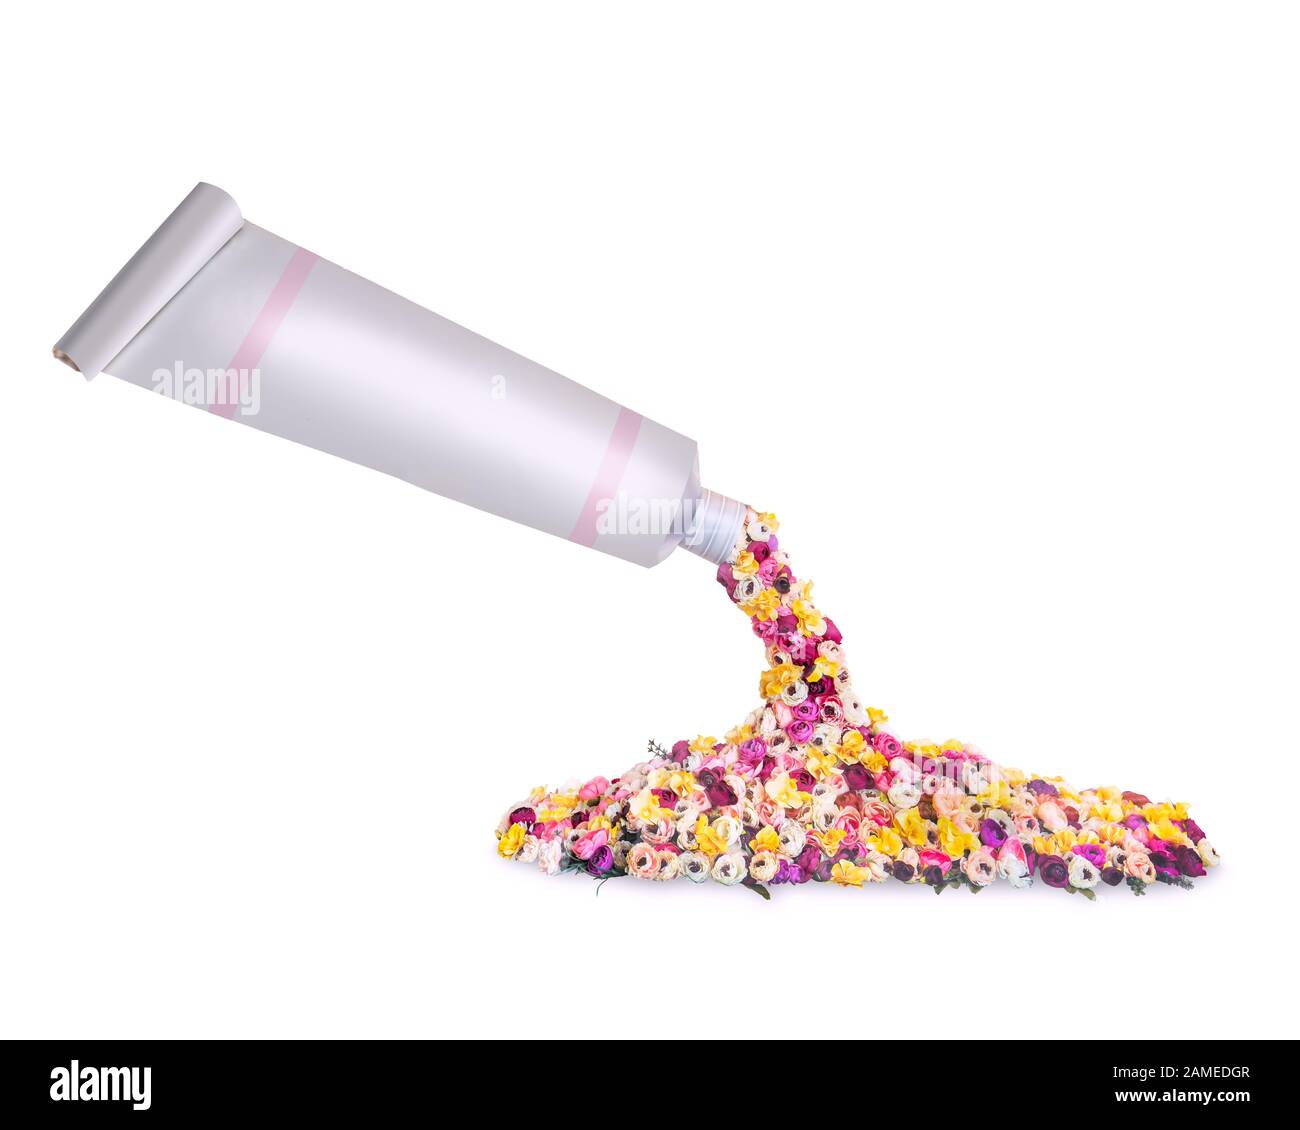 Tubo de plástico con flores de colores Mock-Up aislado sobre fondo blanco Foto de stock